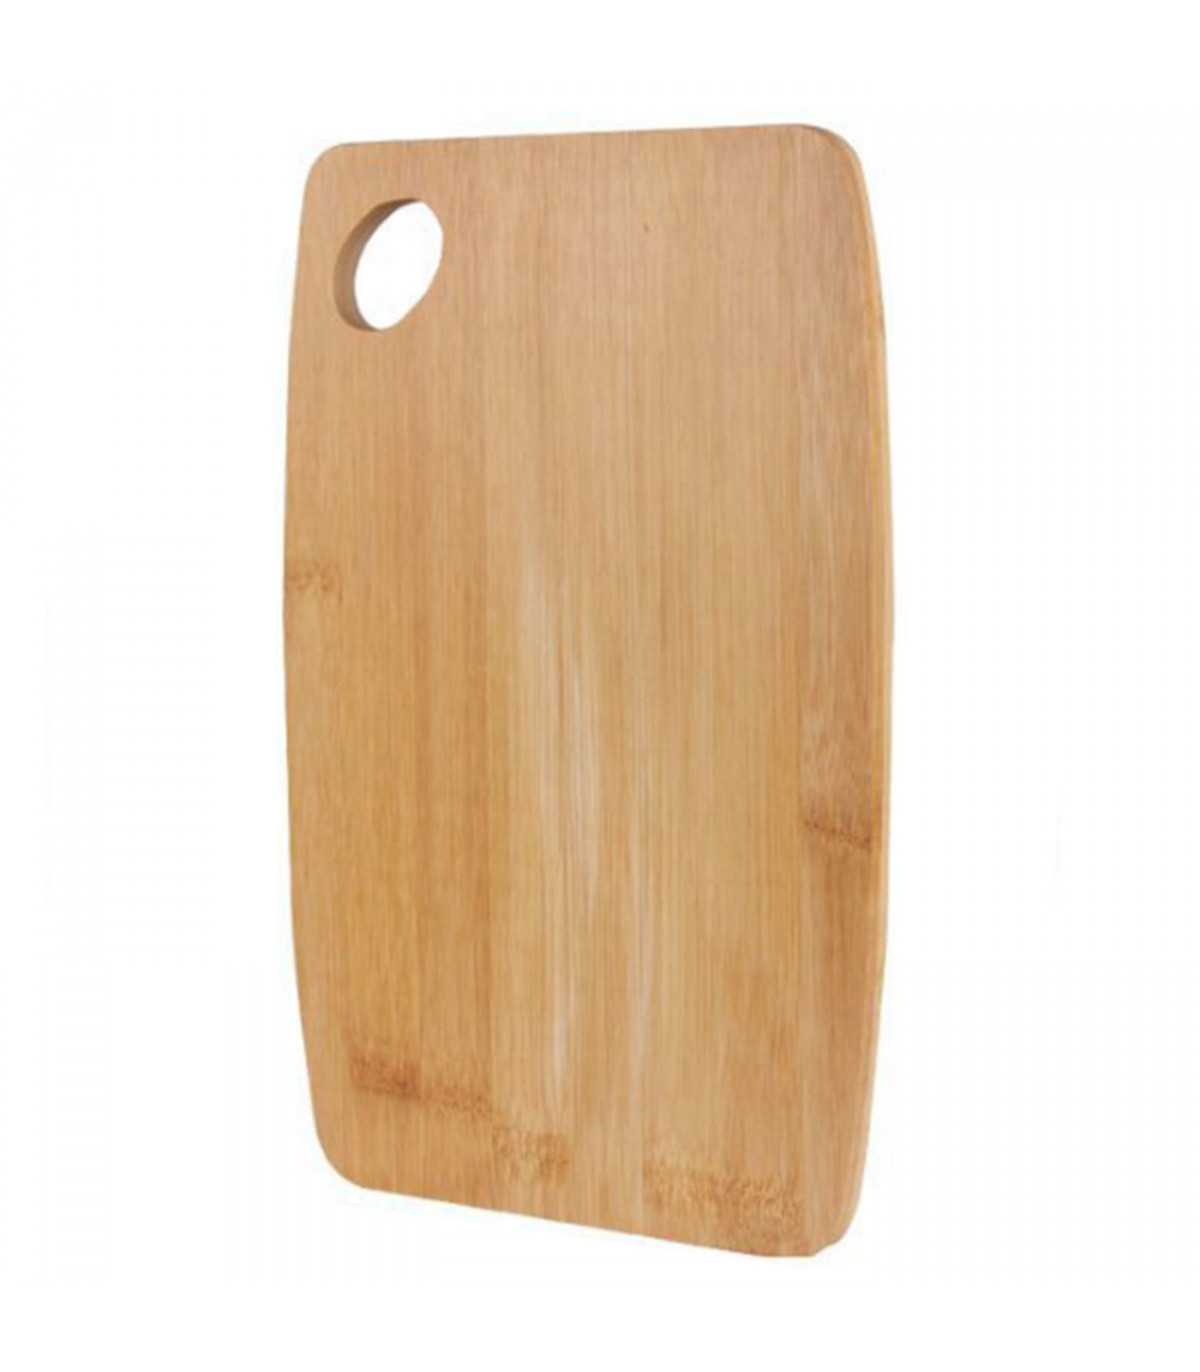 Tabla de cortar de bambú, de 1 x 32,5 x 22 cm, ideal para cocina. Tablero  de corte con agujero para colgar o mover,para realizar